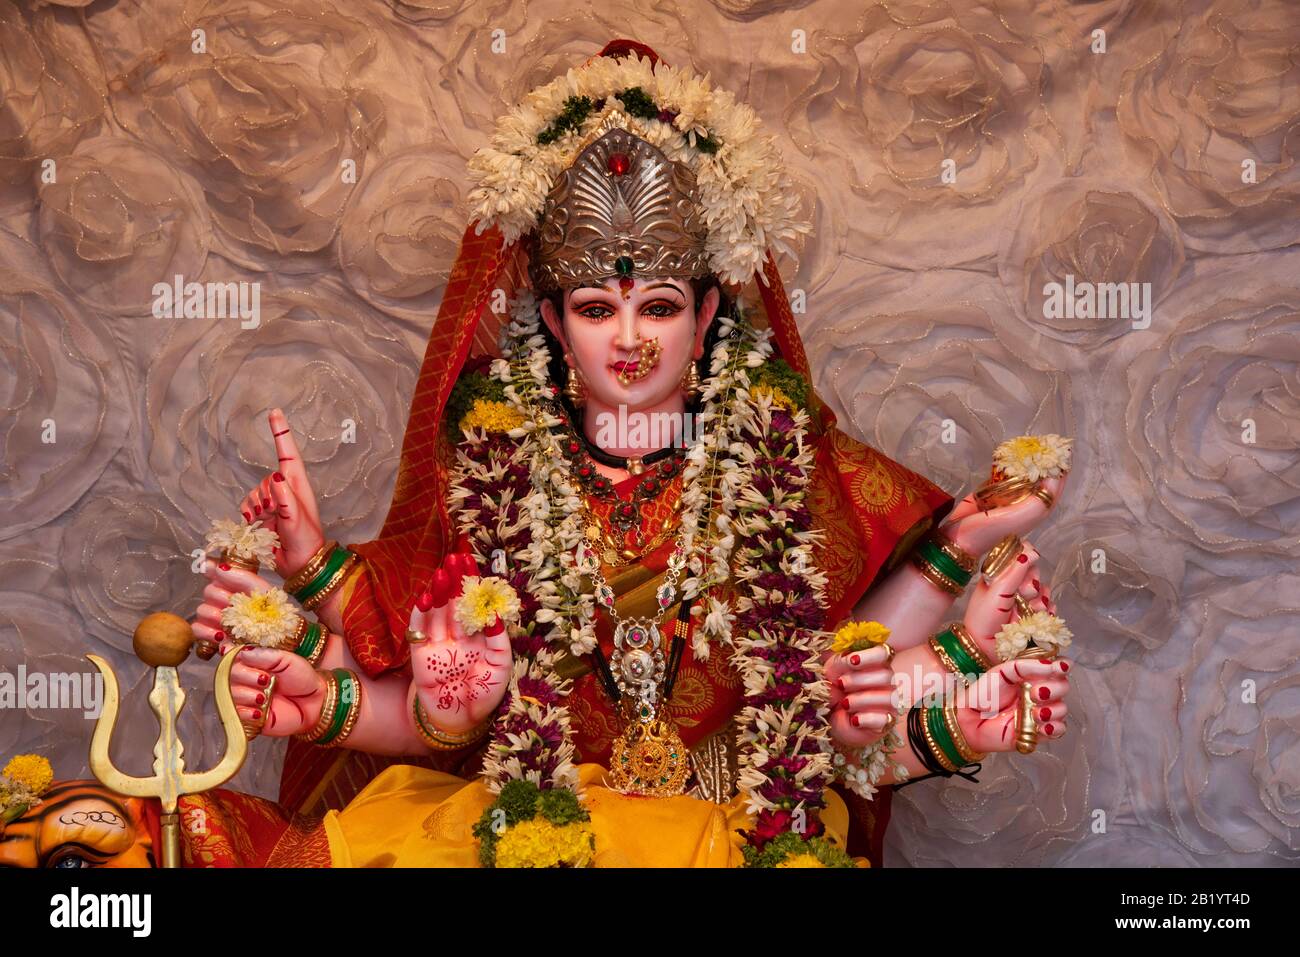 Idole de la Déesse hindoue Durga pendant le festival de Navaratri, Pune, Maharashtra, Inde Banque D'Images